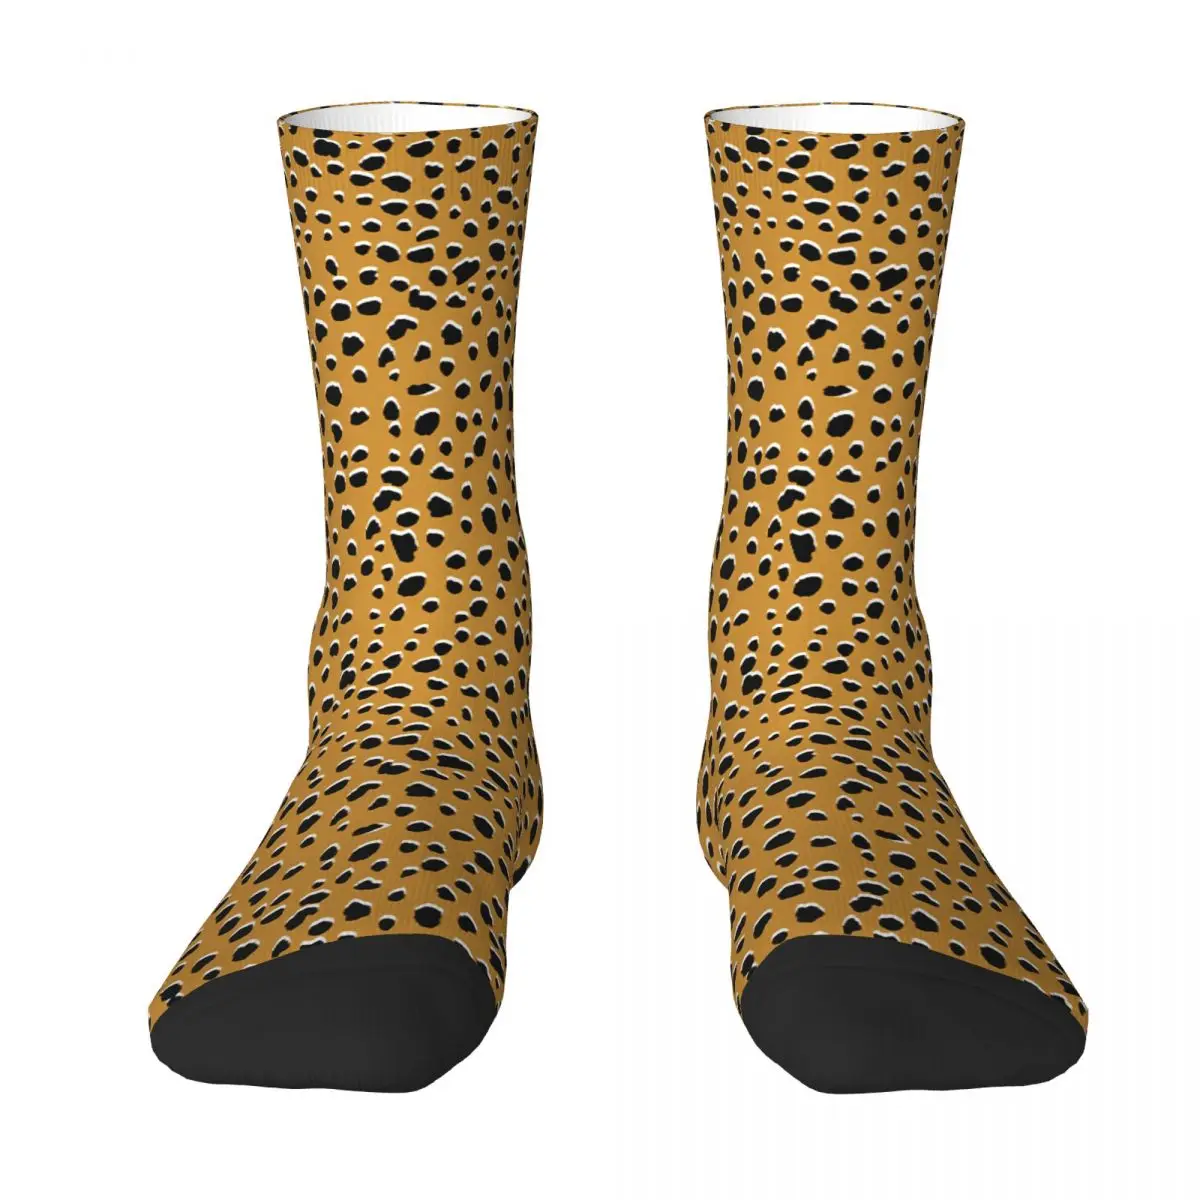 Бесшовные носки для взрослых с леопардовым принтом гепарда, носки унисекс, мужские носки, женские носки новинка 2021 модные женские носки с принтом в корейском стиле женские сексуальные носки с леопардовым принтом женские носки забавные носки